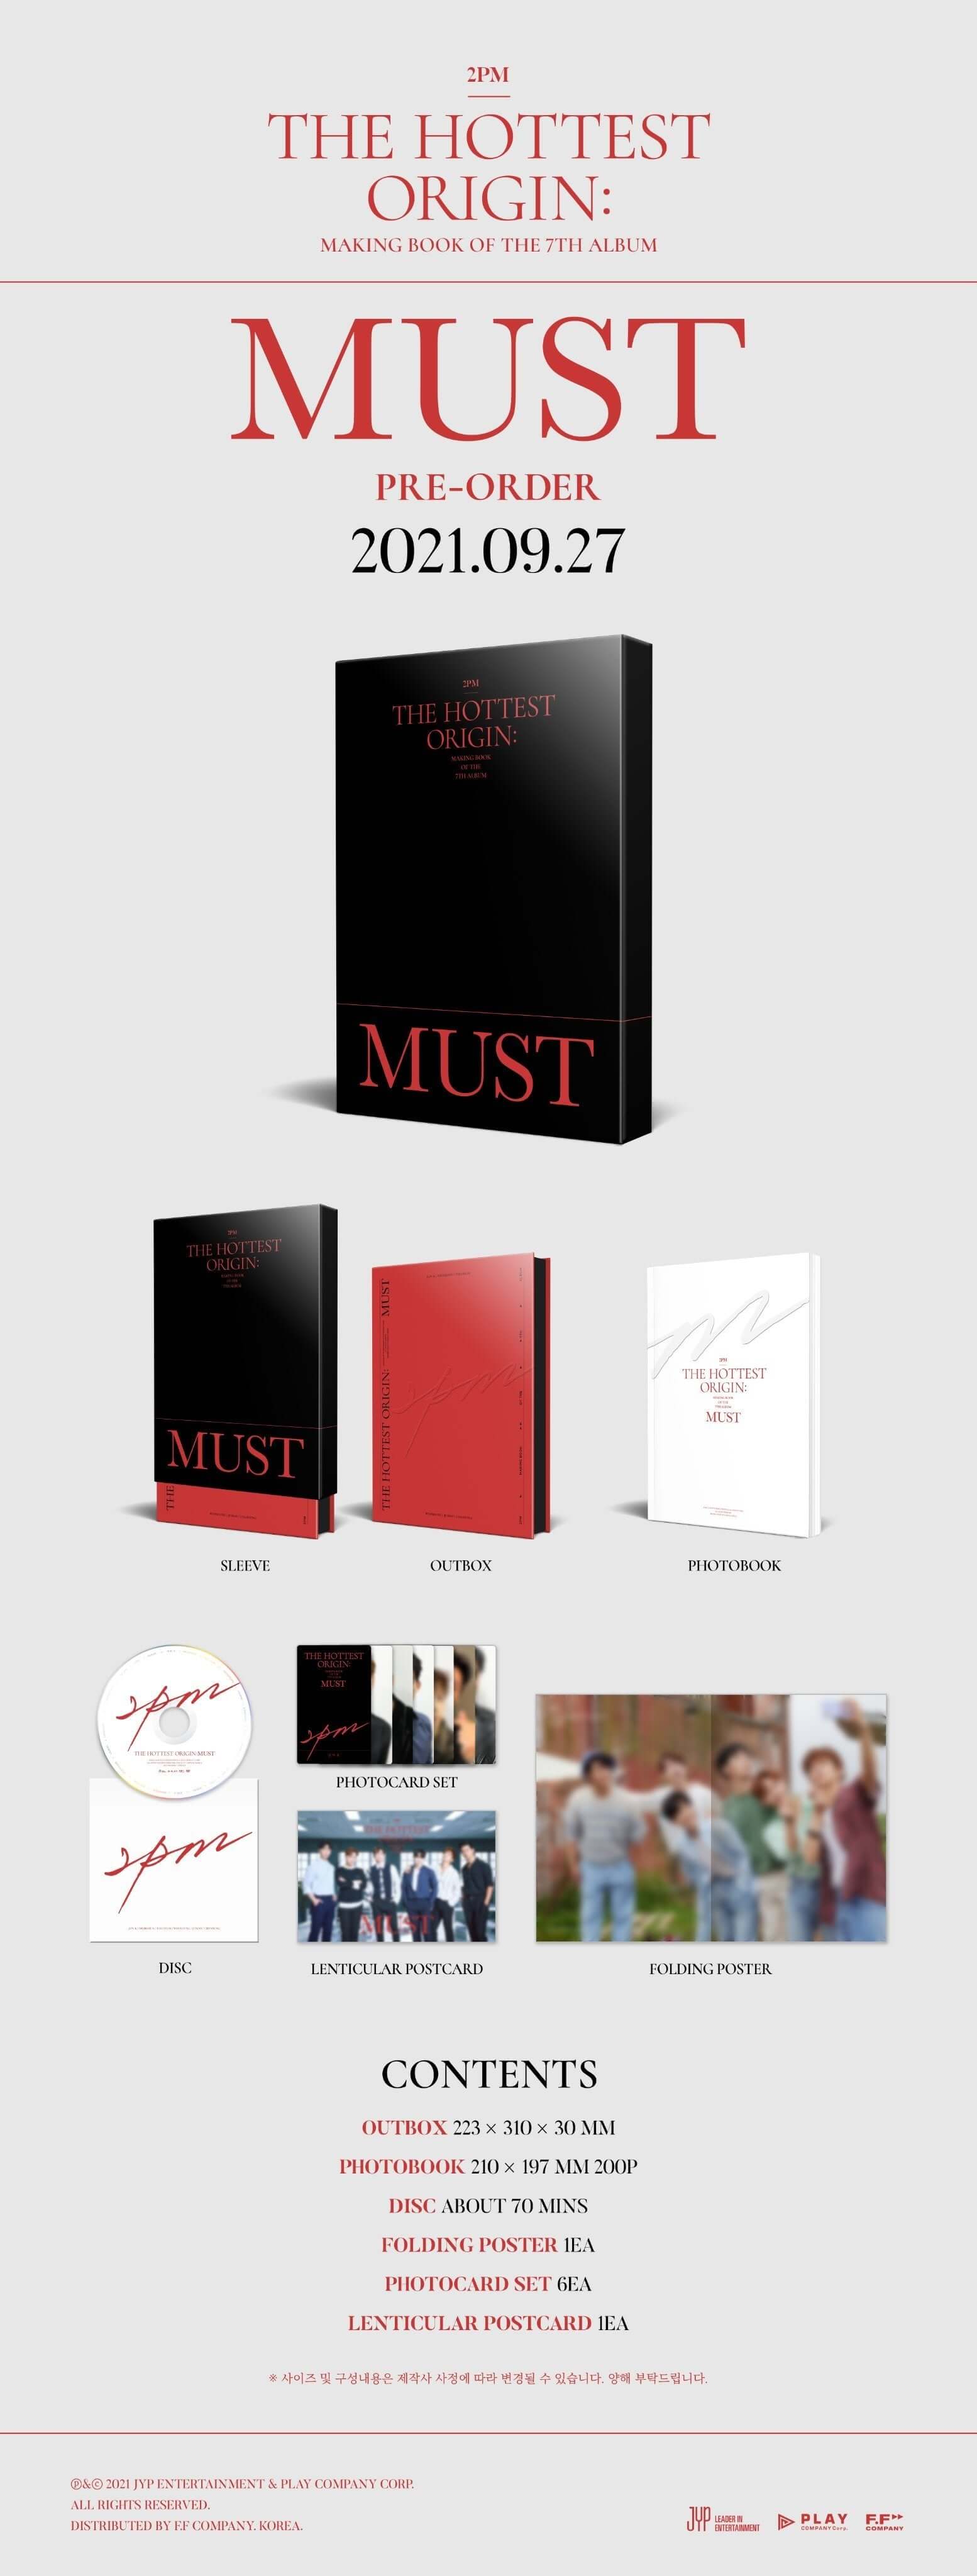 2PM - The Hottest Origin: MUST Making Book